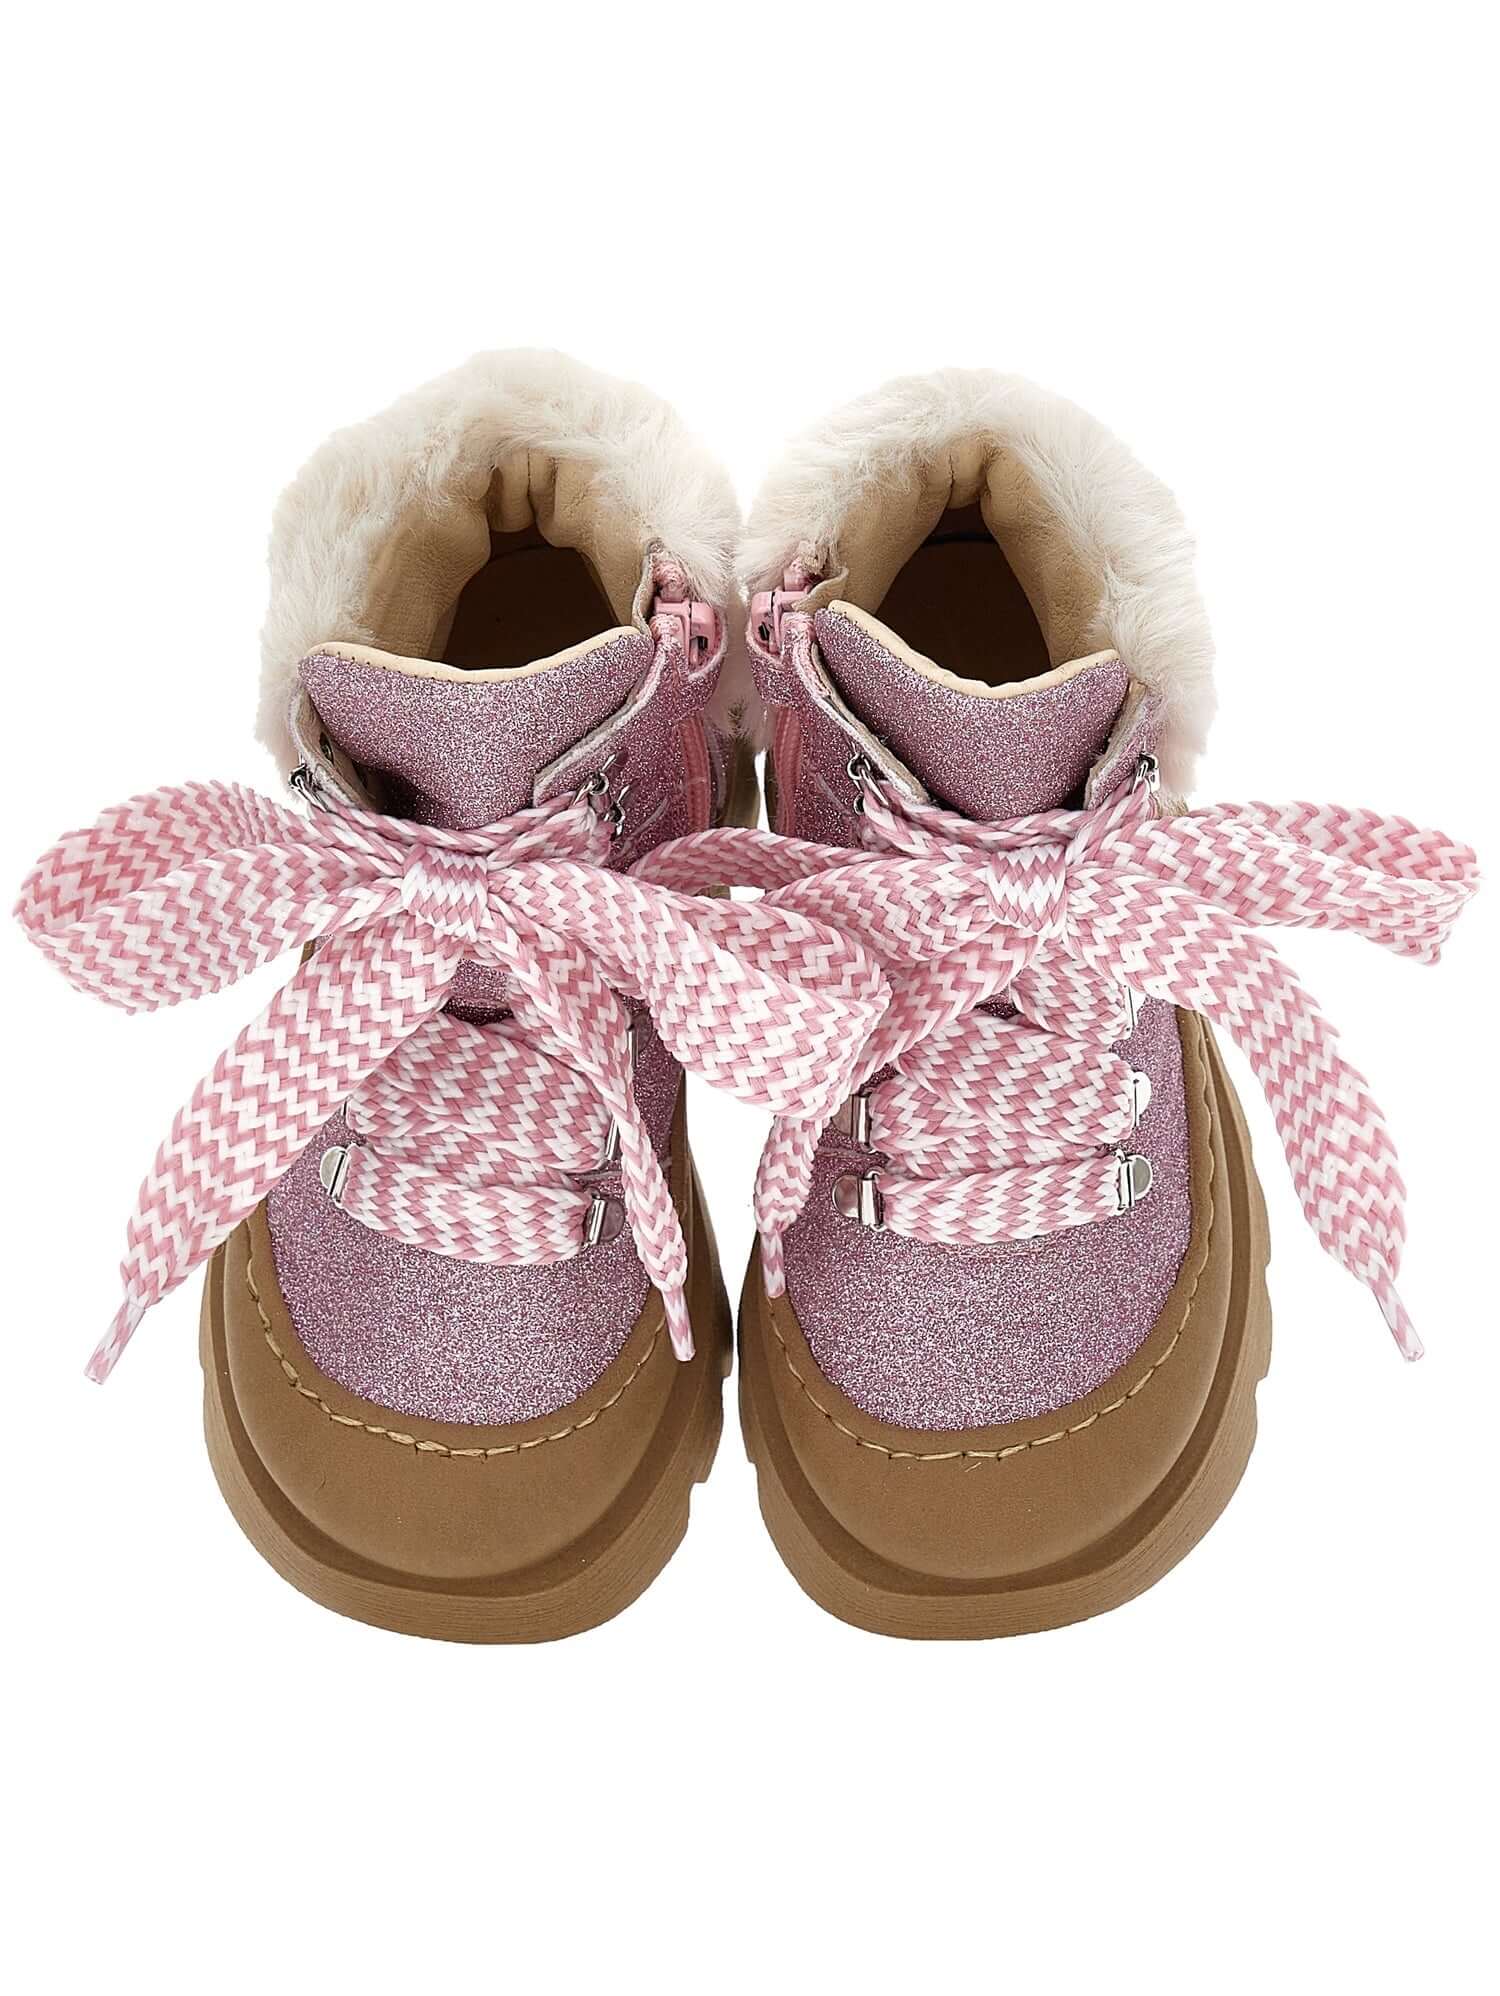 Monnalisa Girls Pink Glitter Chunky Boots